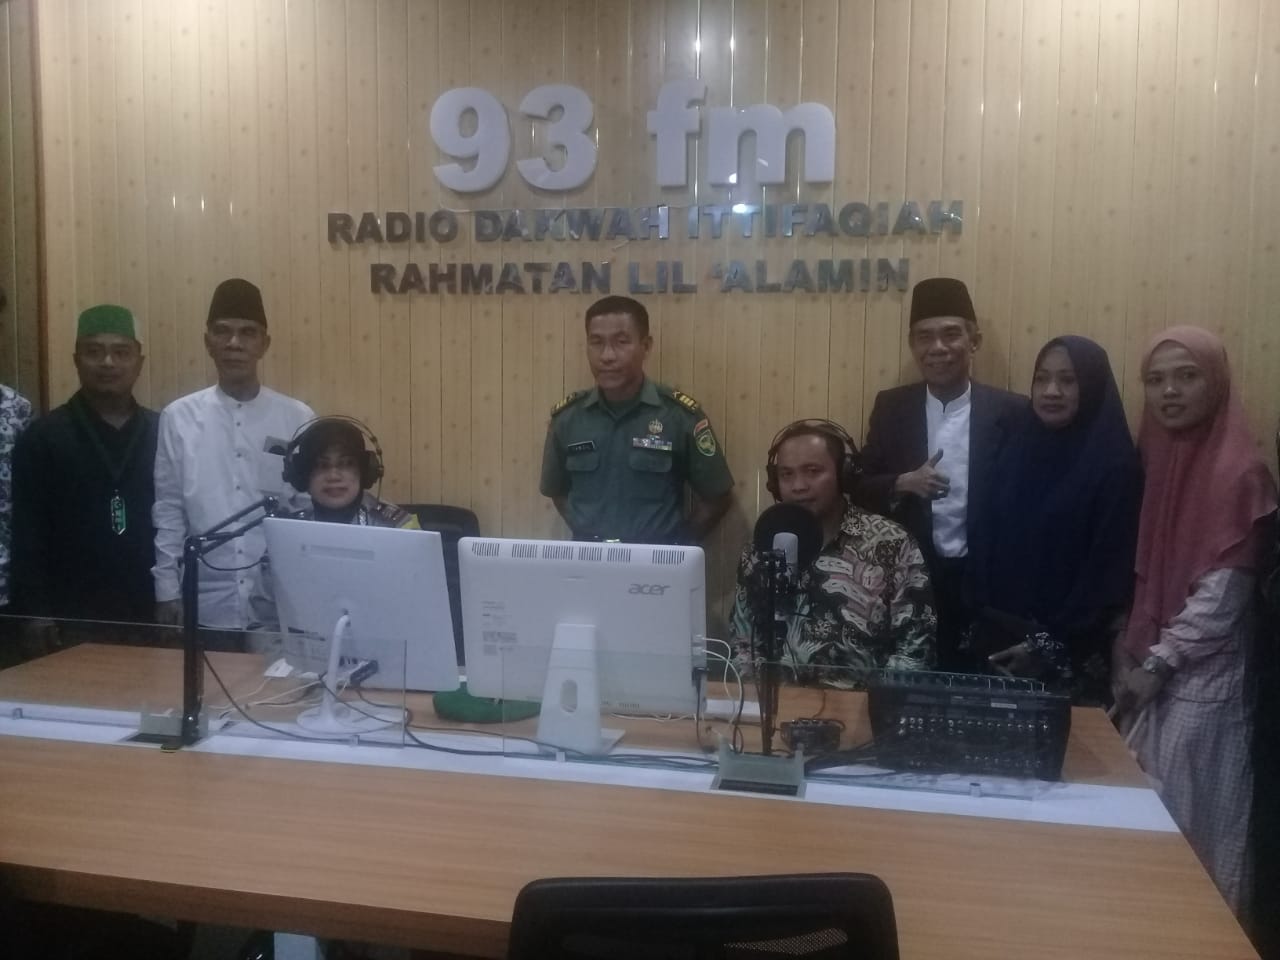 Radio Dakwa Al Ittifaqiah Mempunyai Ciri Khas Tanpa Koma